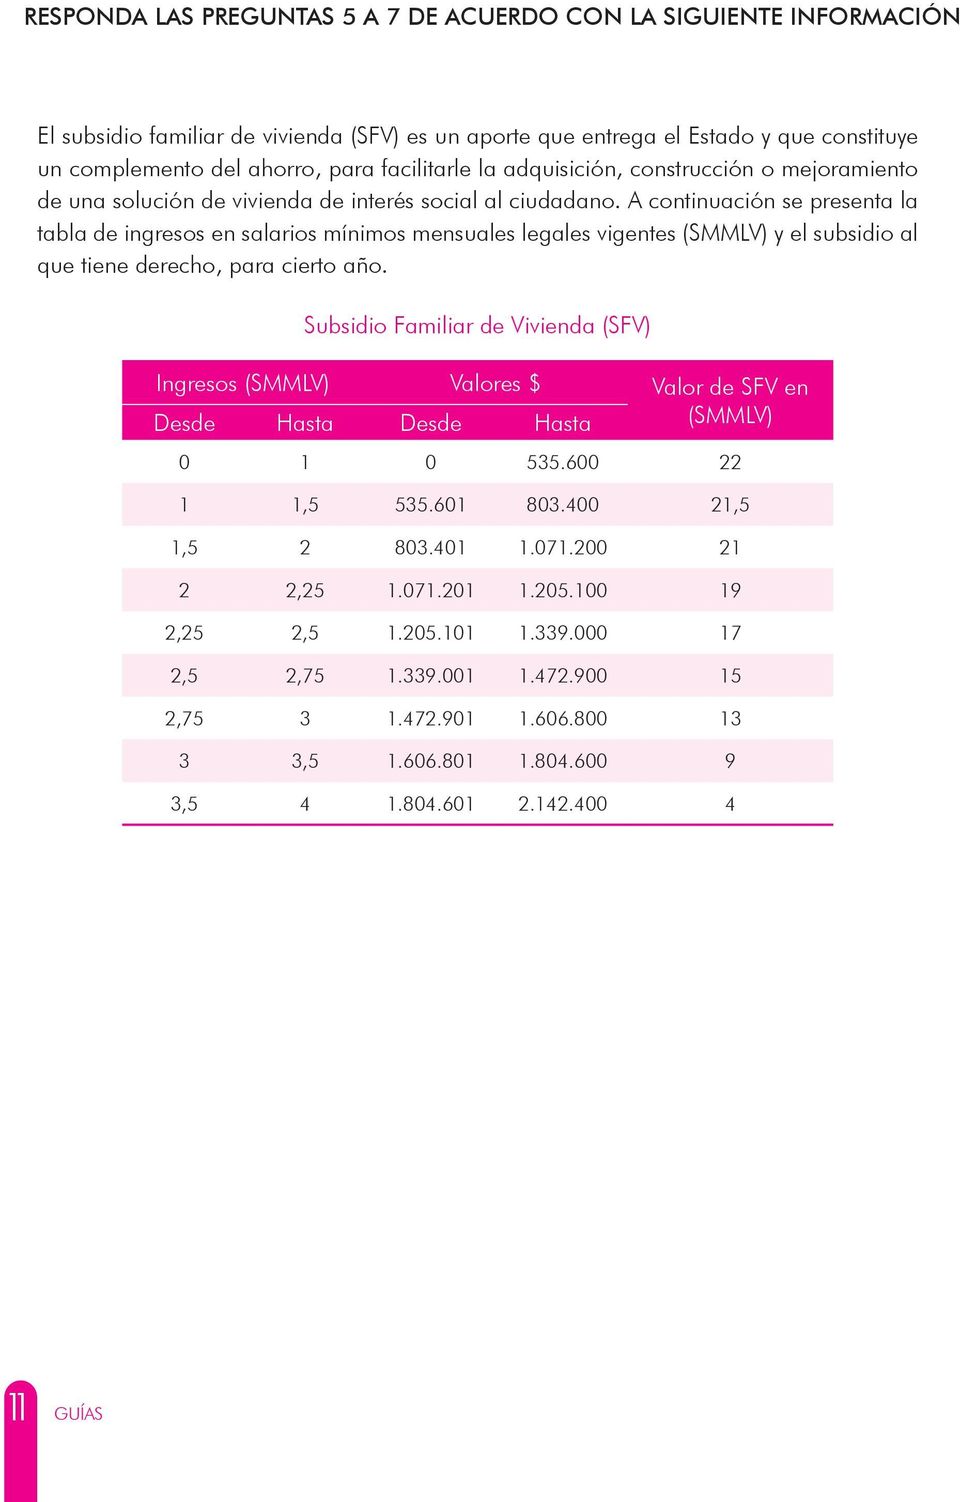 A continuación se presenta la tabla de ingresos en salarios mínimos mensuales legales vigentes (SMMLV) y el subsidio al que tiene derecho, para cierto año.